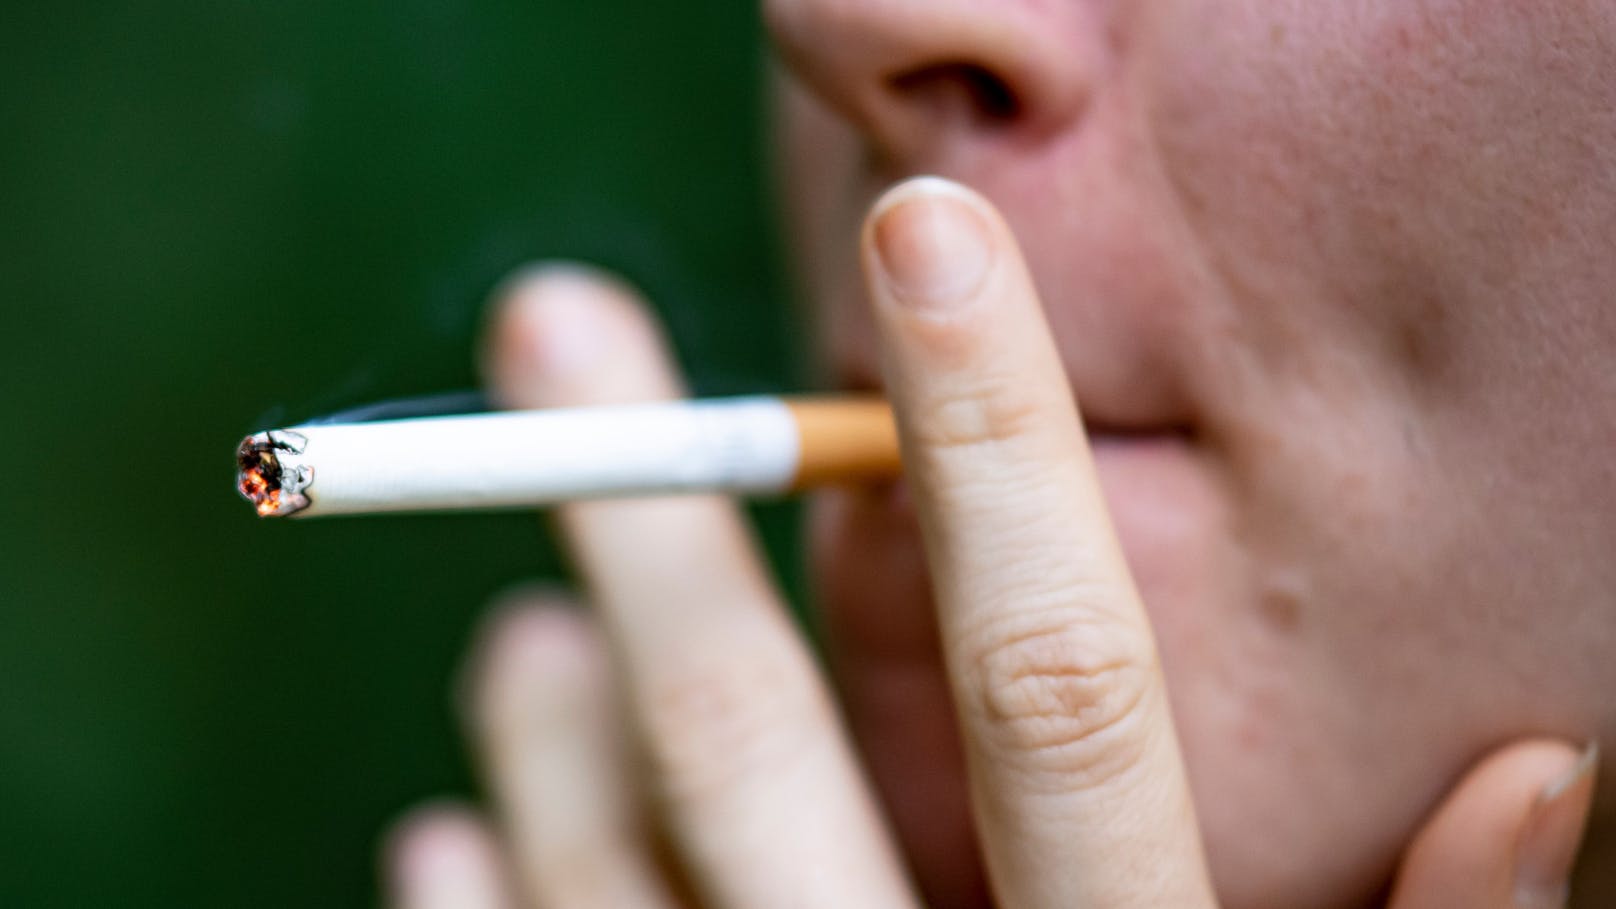 Wenn sich ein Raucher erst einmal infiziert hat, hat er ein viel größeres Risiko, schwer an Covid-19 zu erkranken, sagen Ärzte.